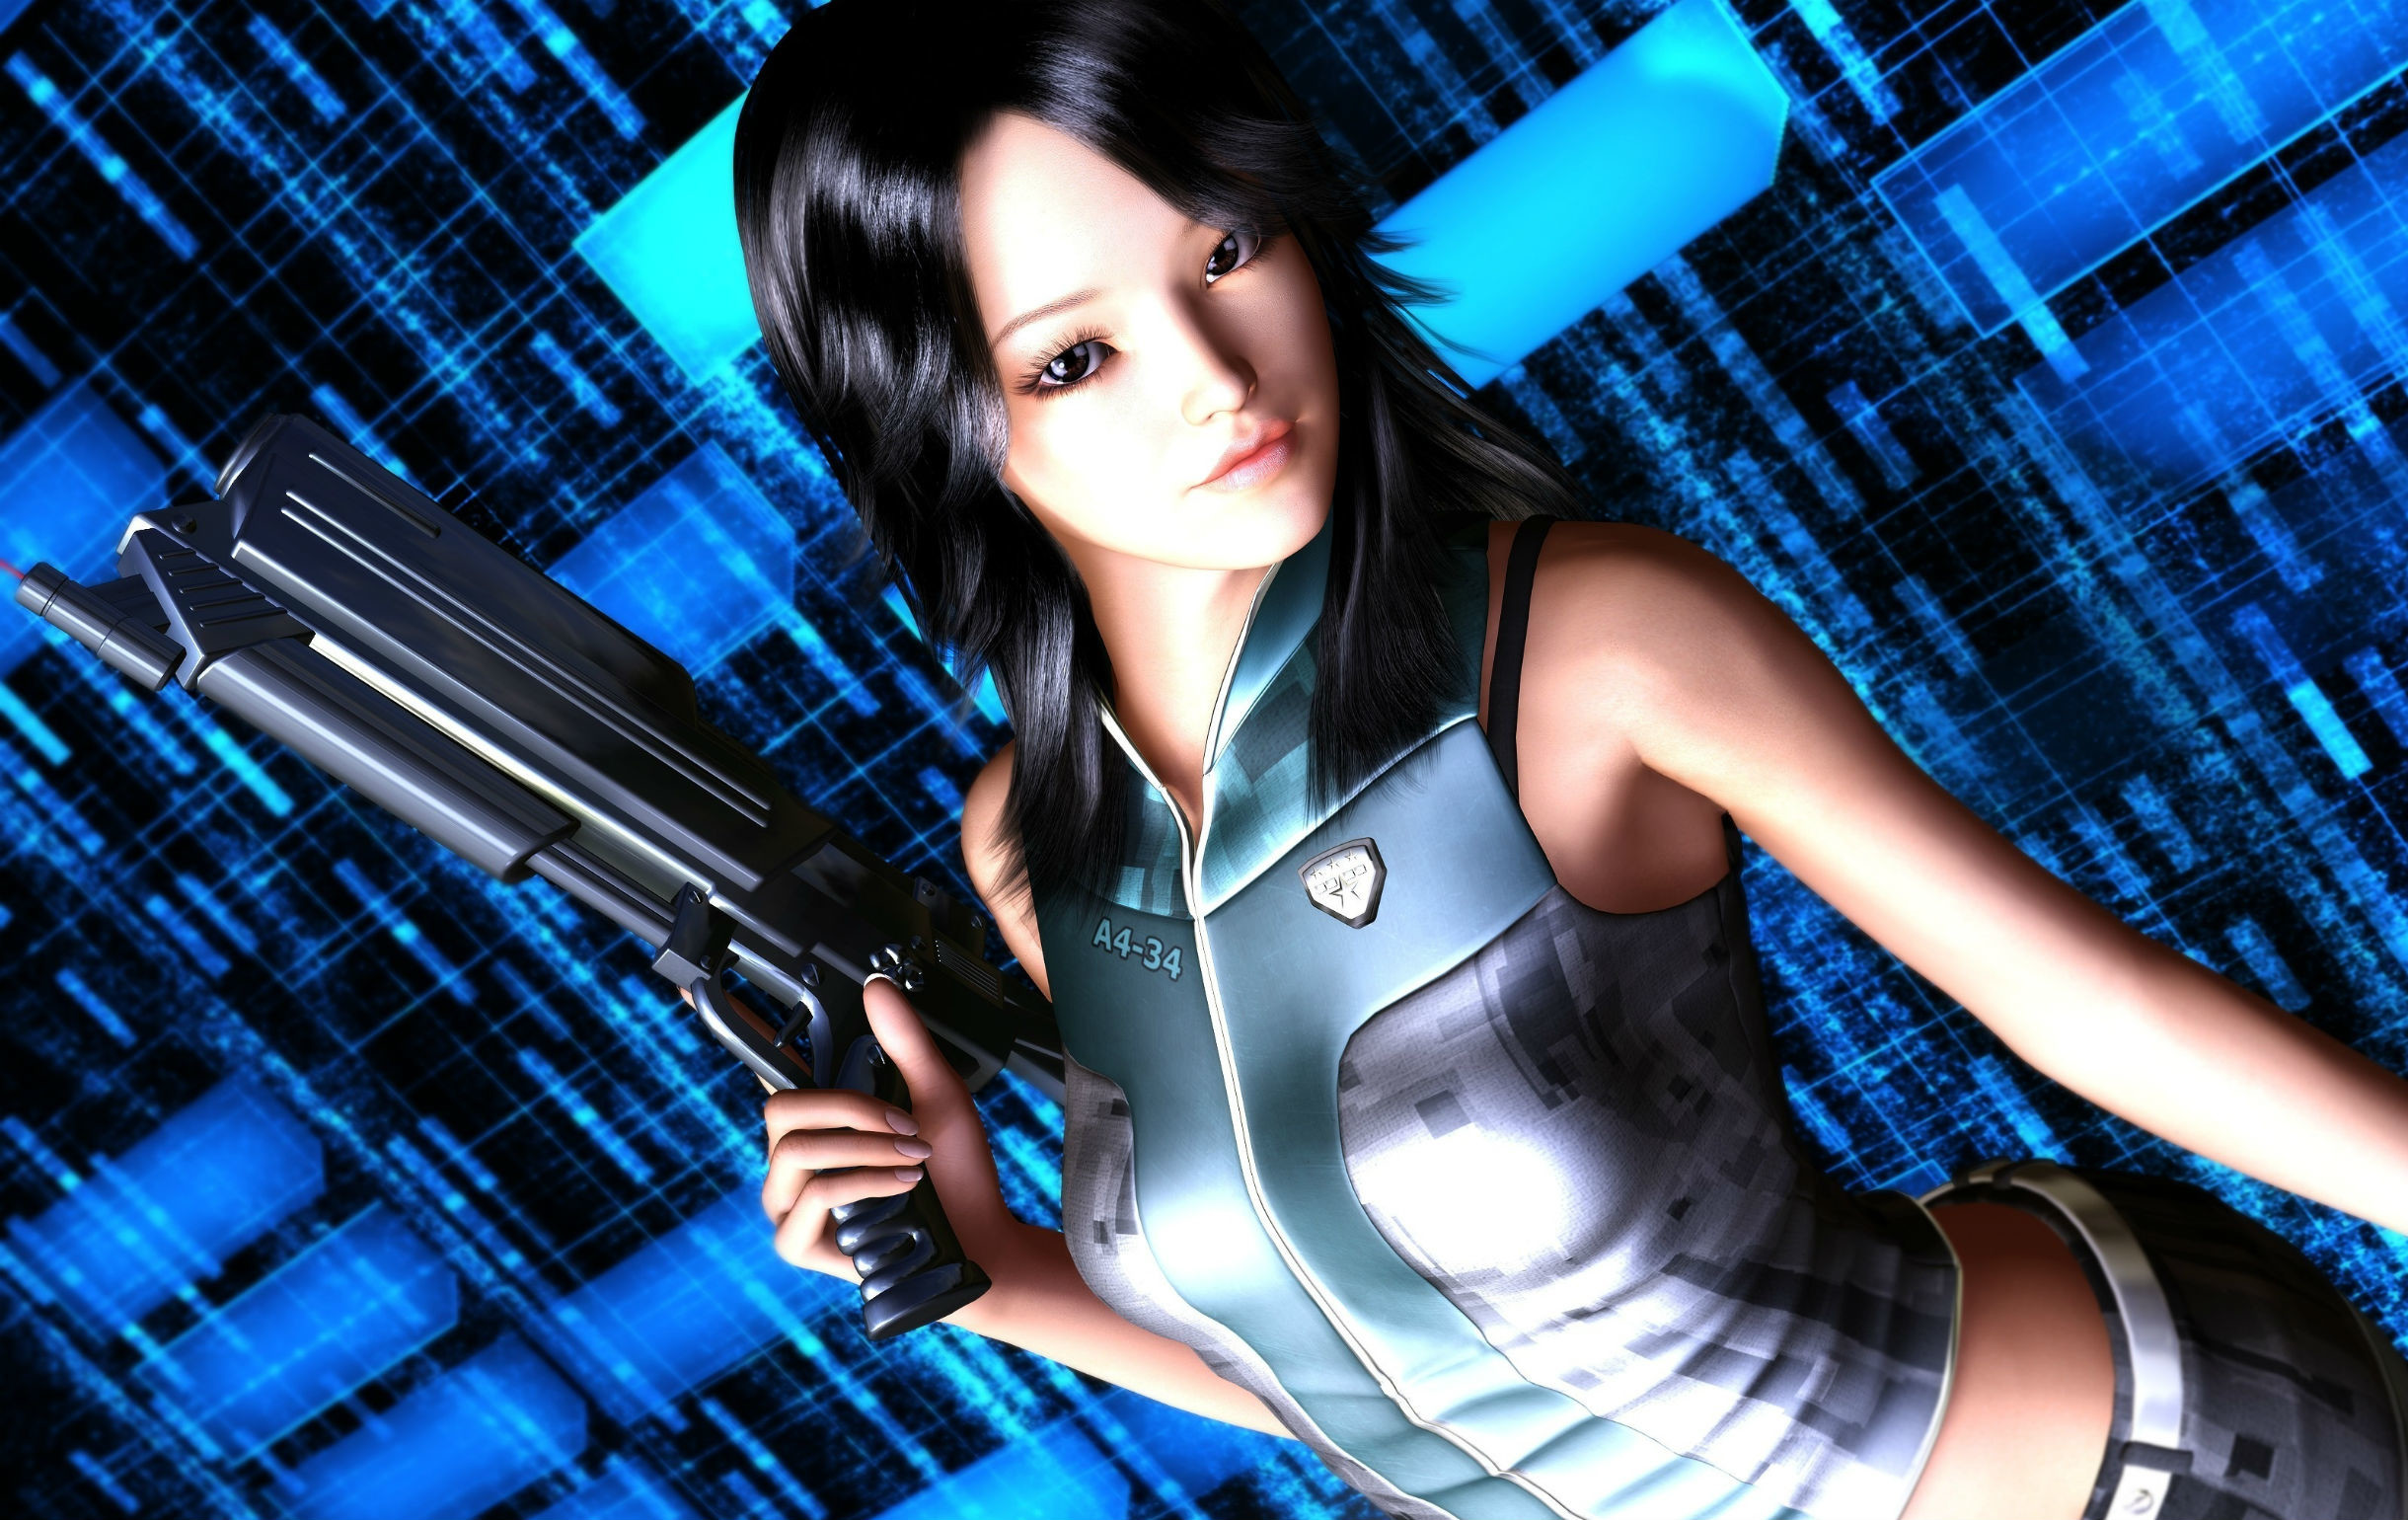 2440x1540 Warrior 3D Graphics Fantasy Girls girls guns girl gun sci-fi f wallpaper |   | 183399 | WallpaperUP